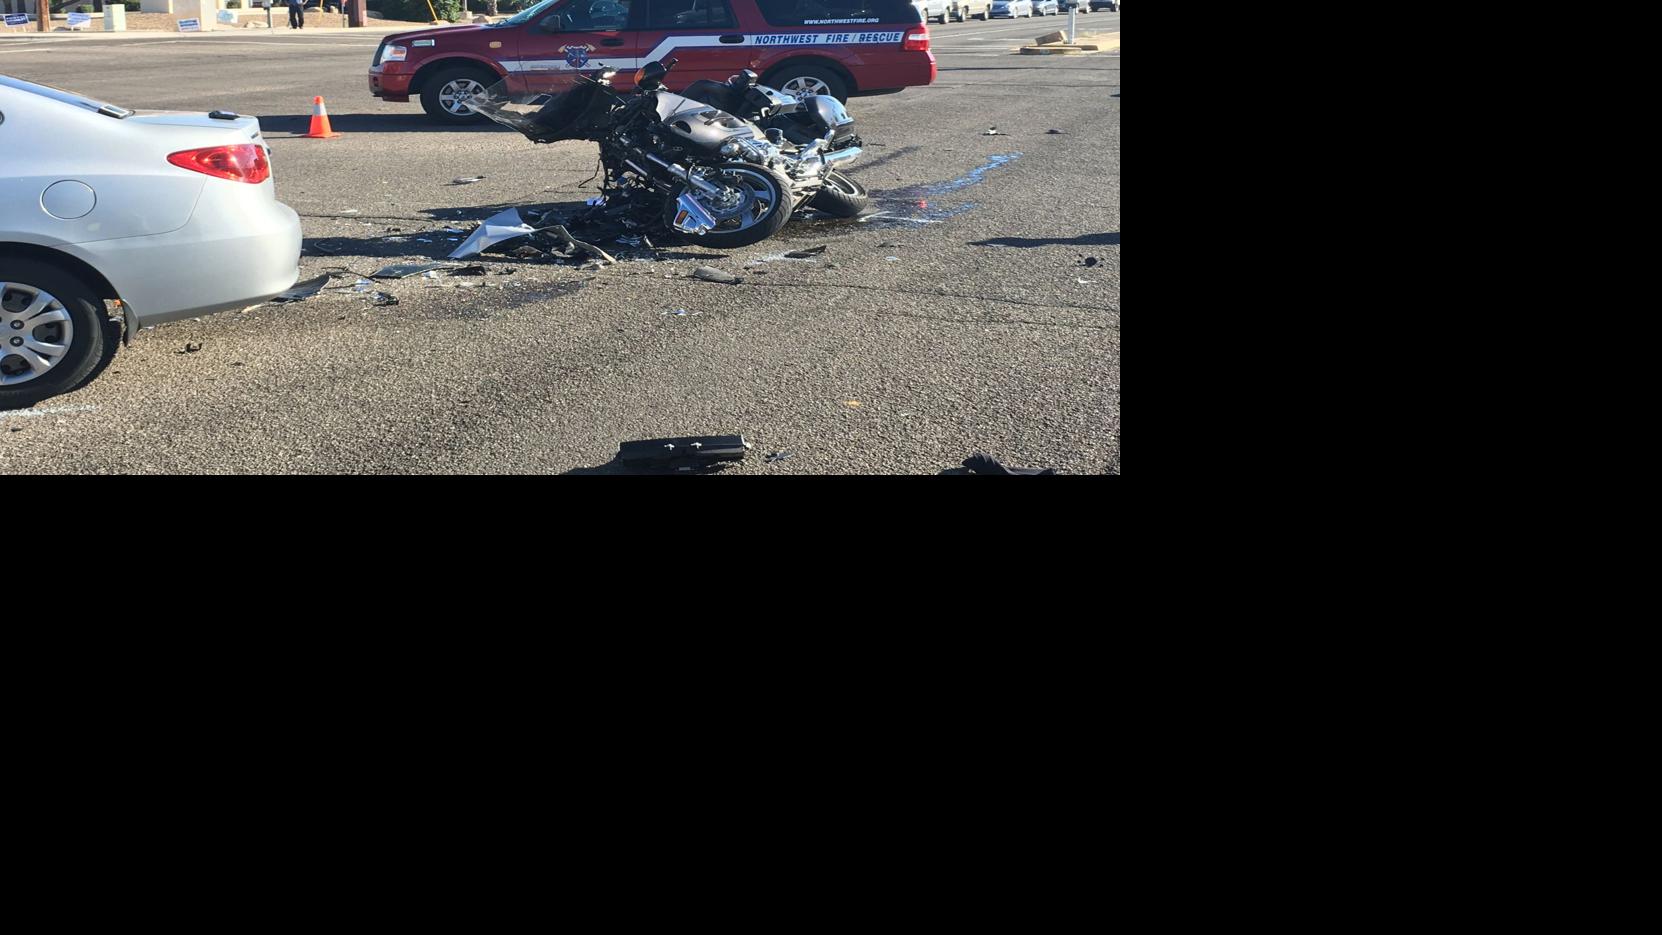 Man seriously injured in northwest Tucson motorcycle crash